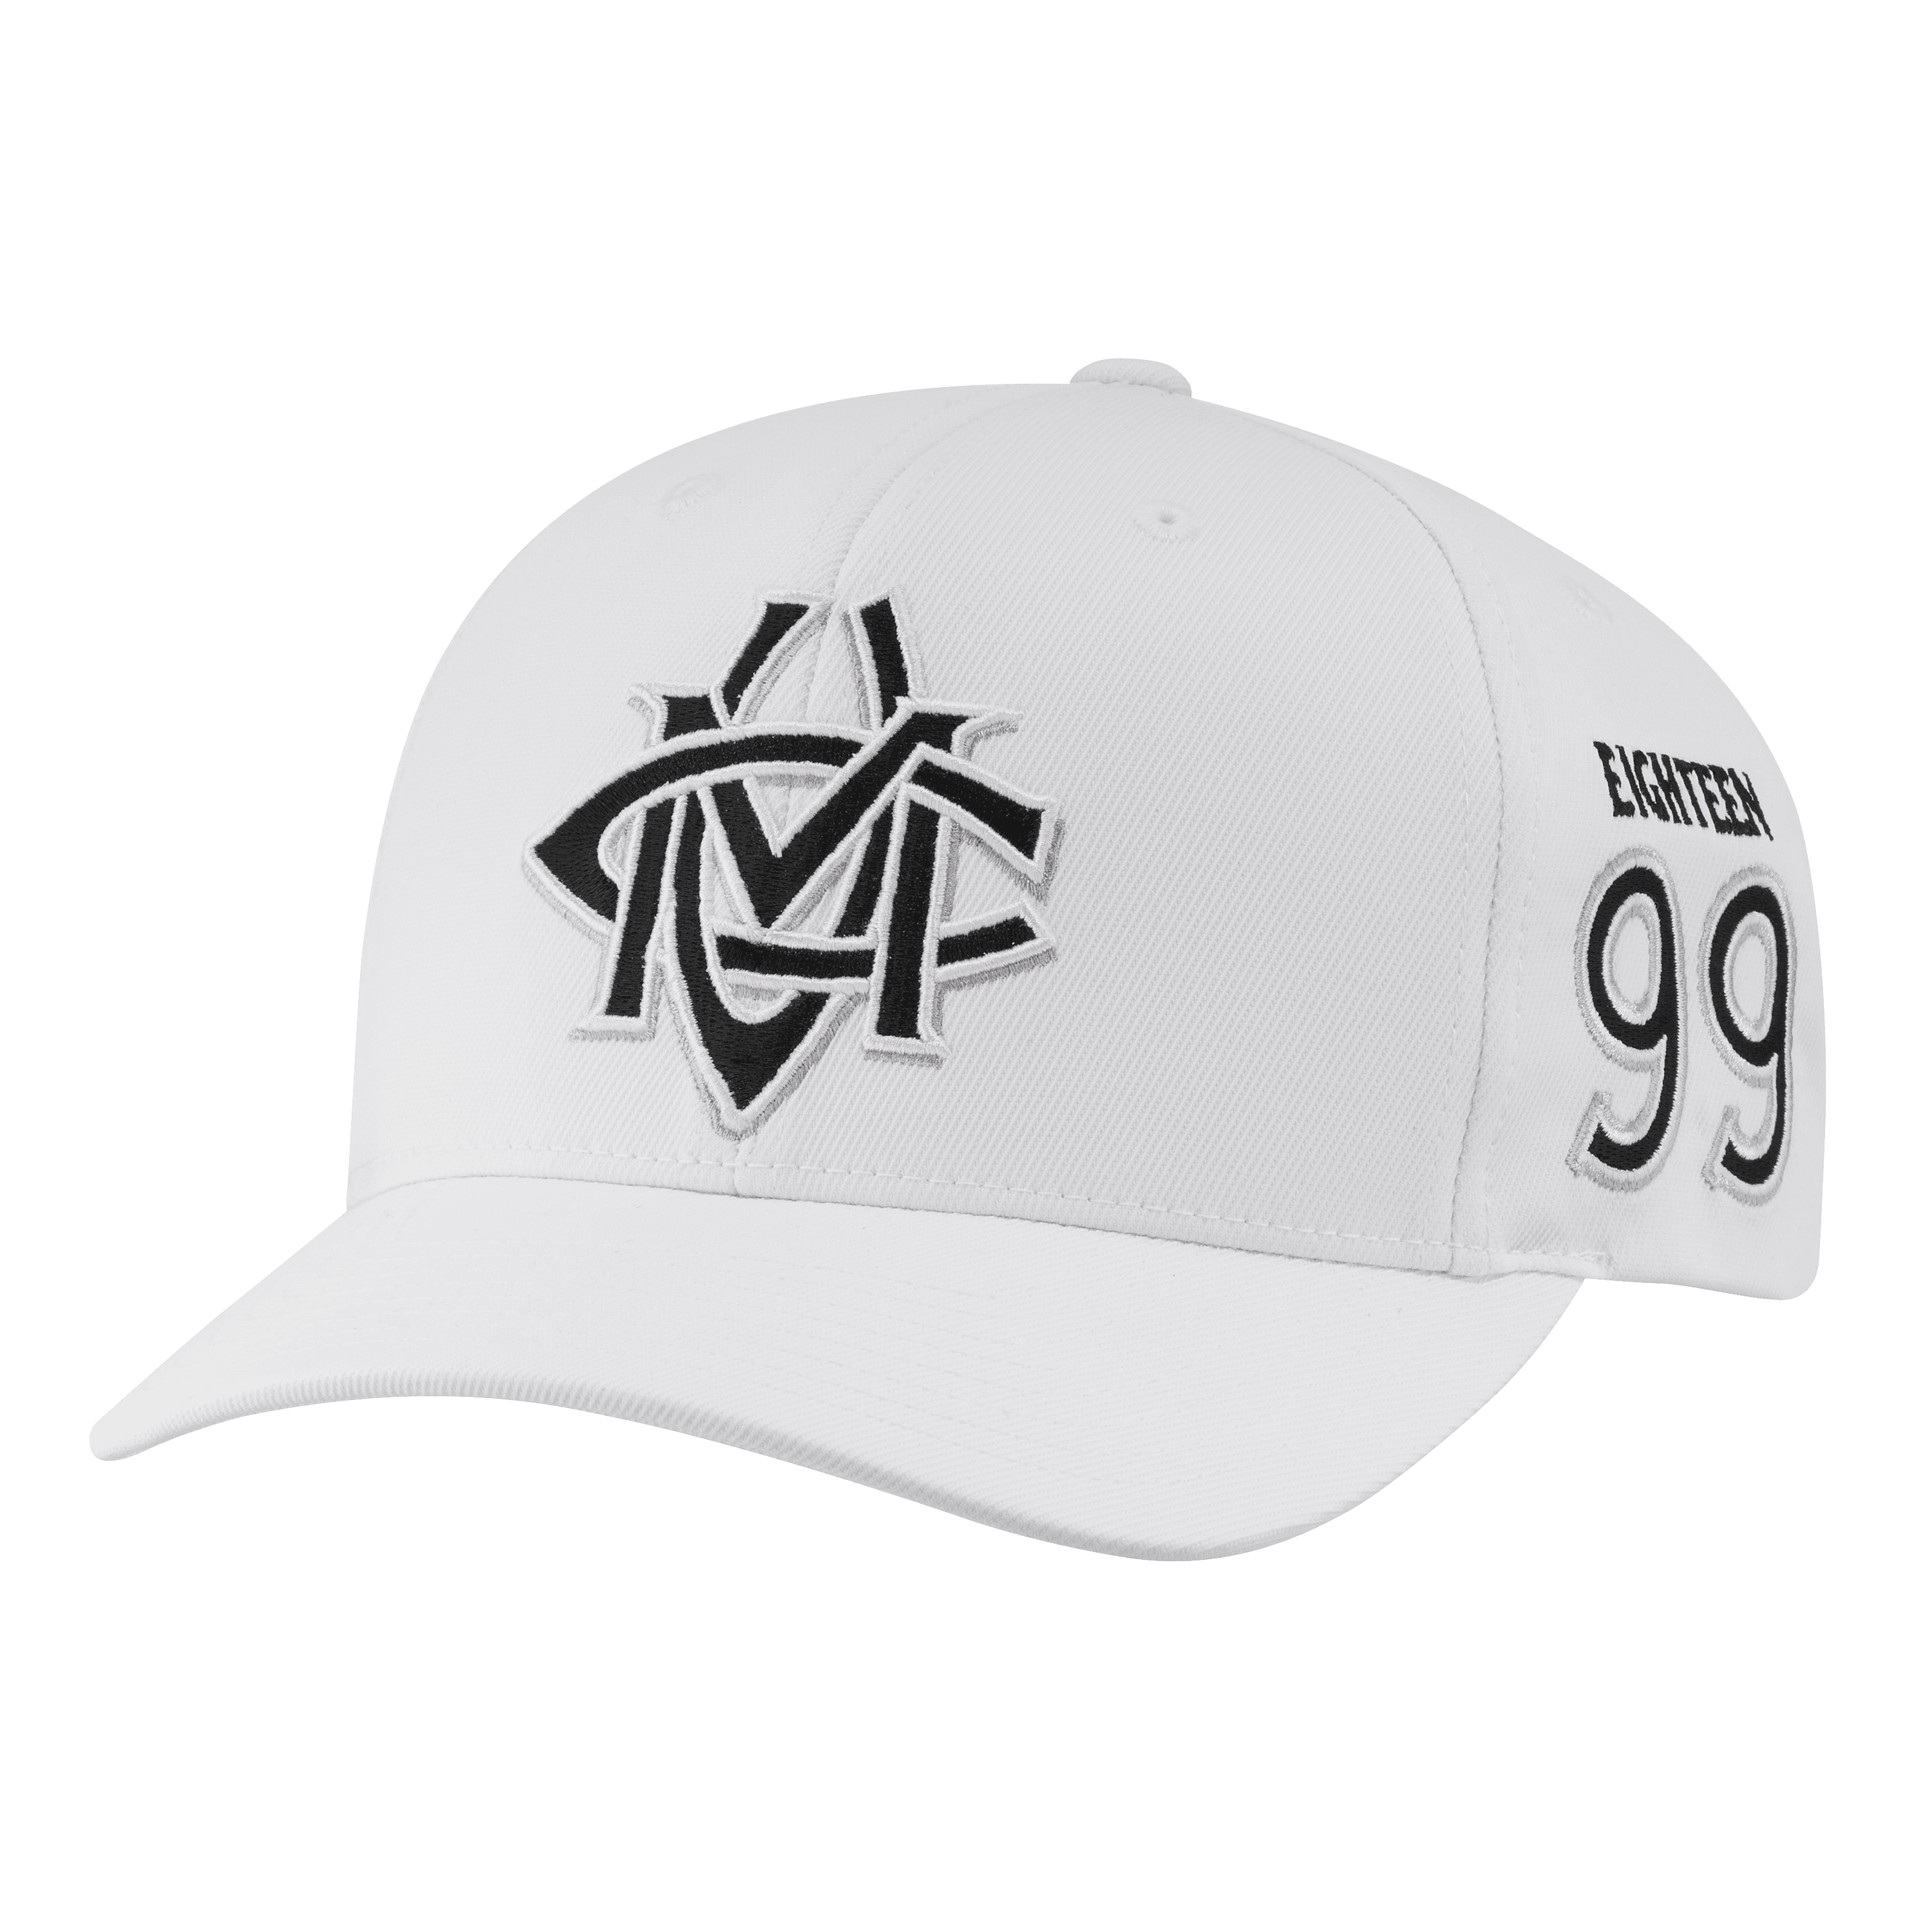 Lifestyle CCM Monochrome Emblem Structured Cap 